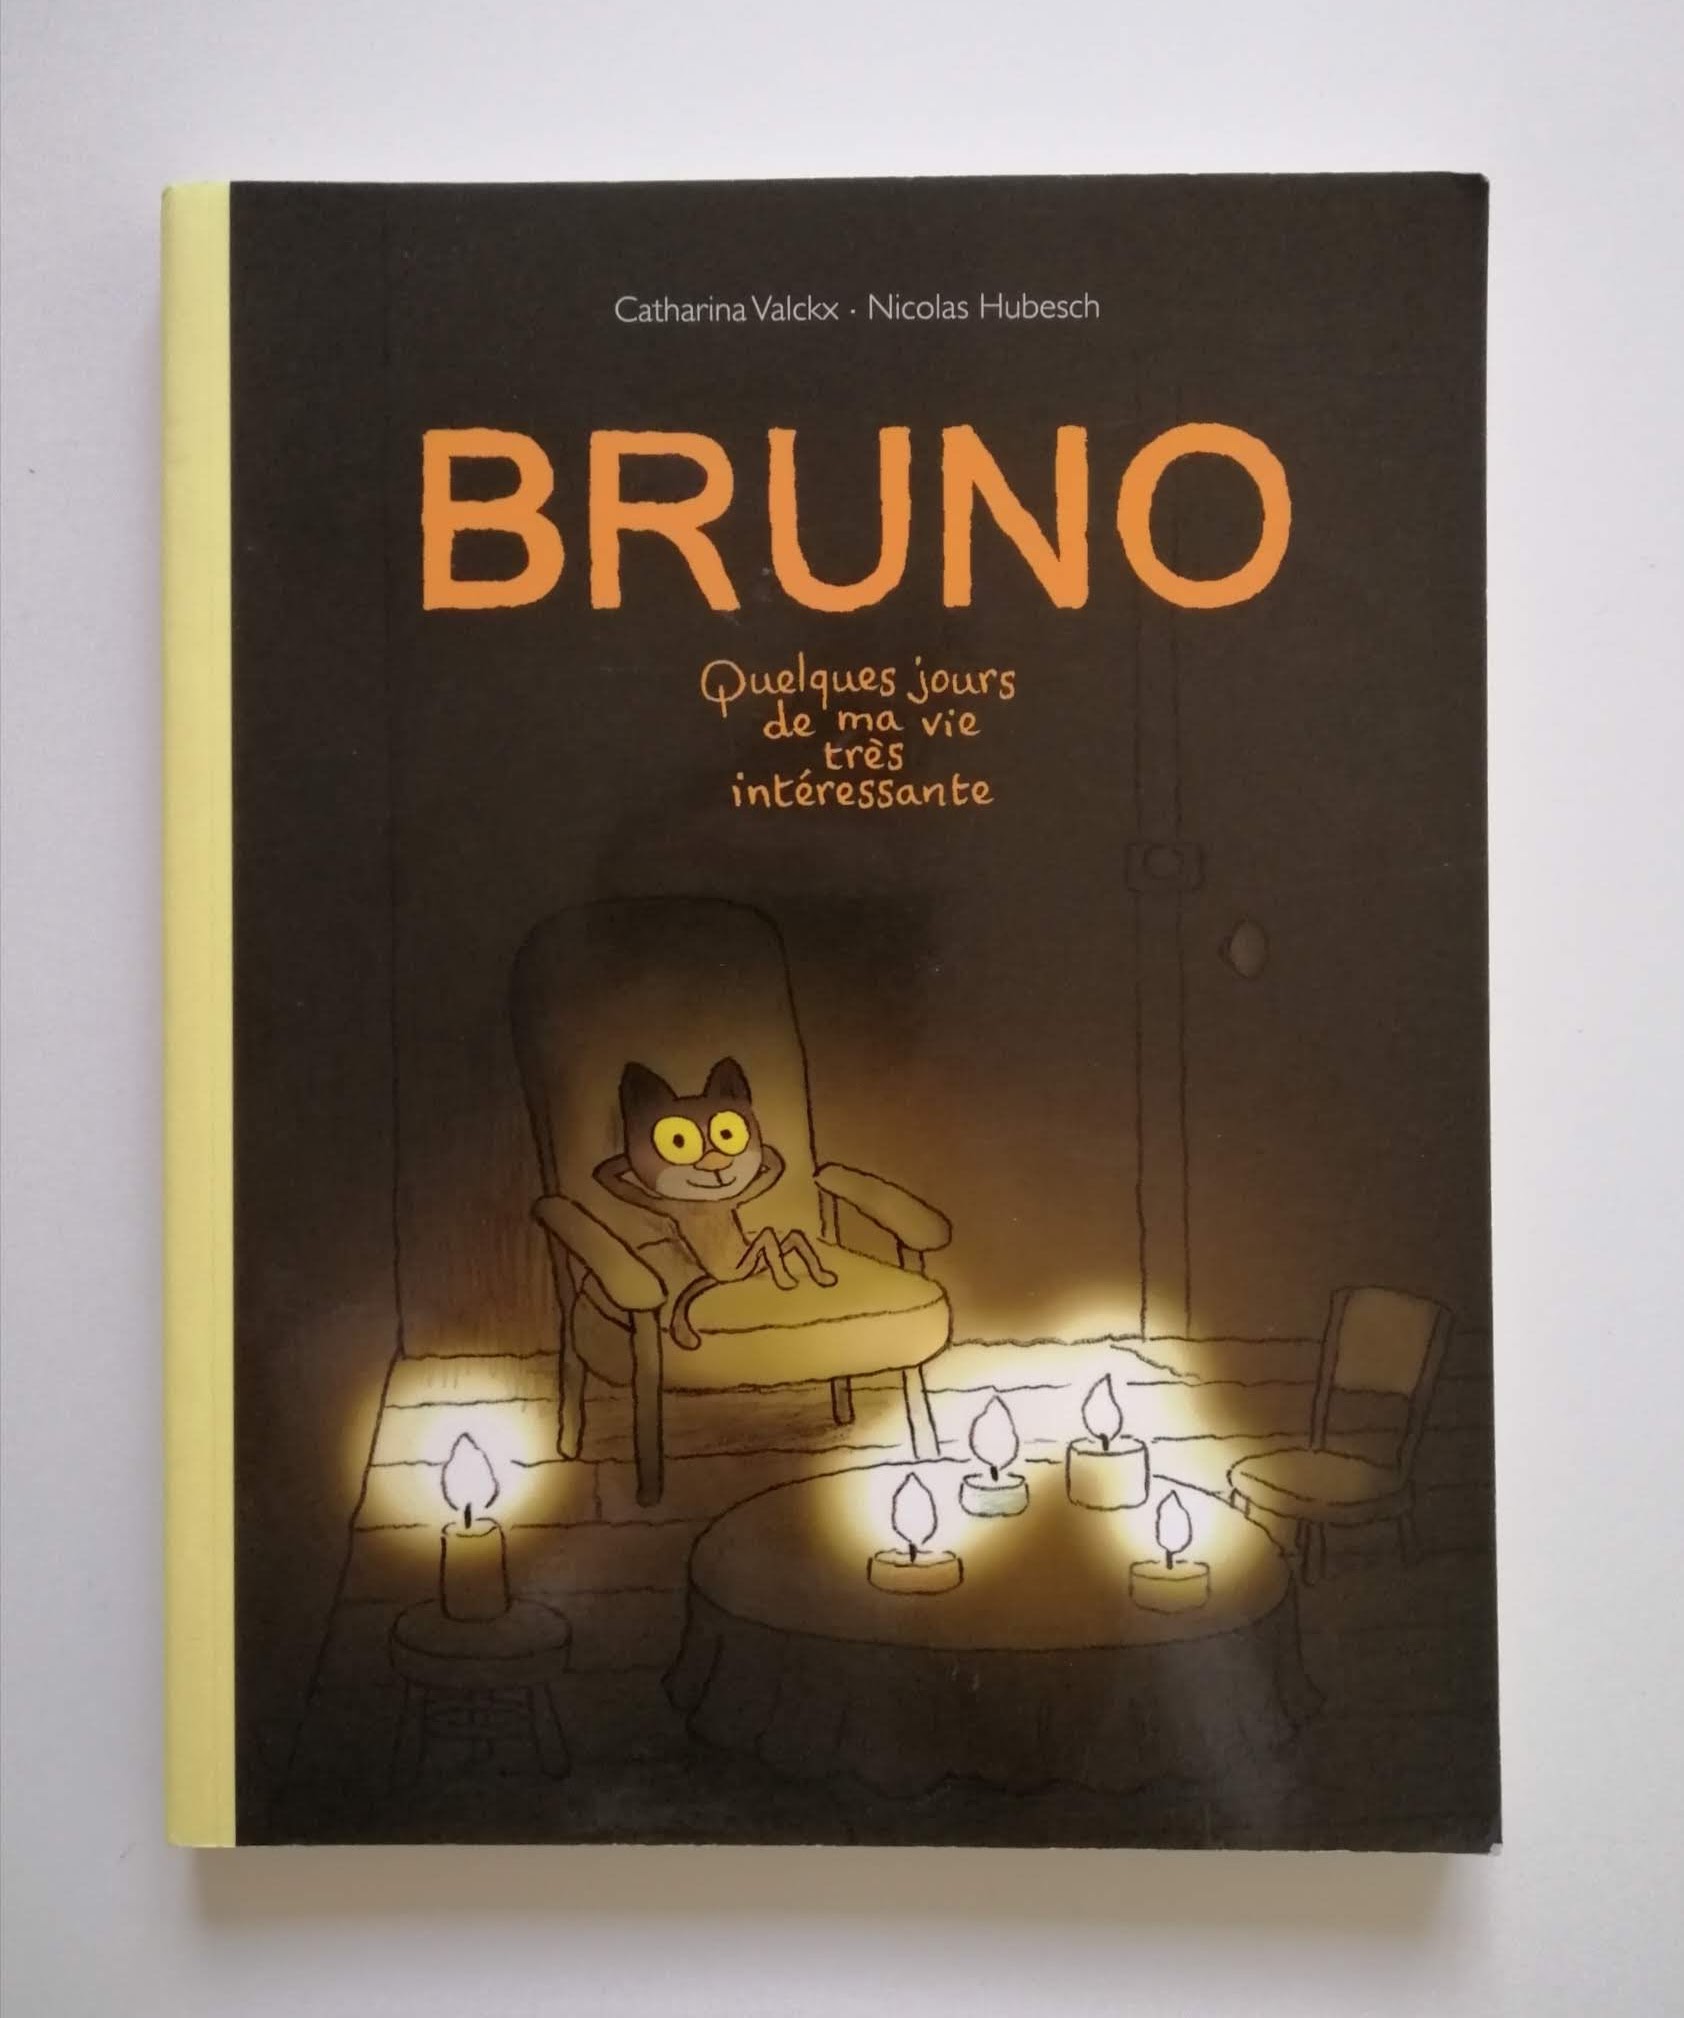 Bruno - Quelques jours de ma vie très intéressante (Catharina Valckx et Nicolas Hubesch)